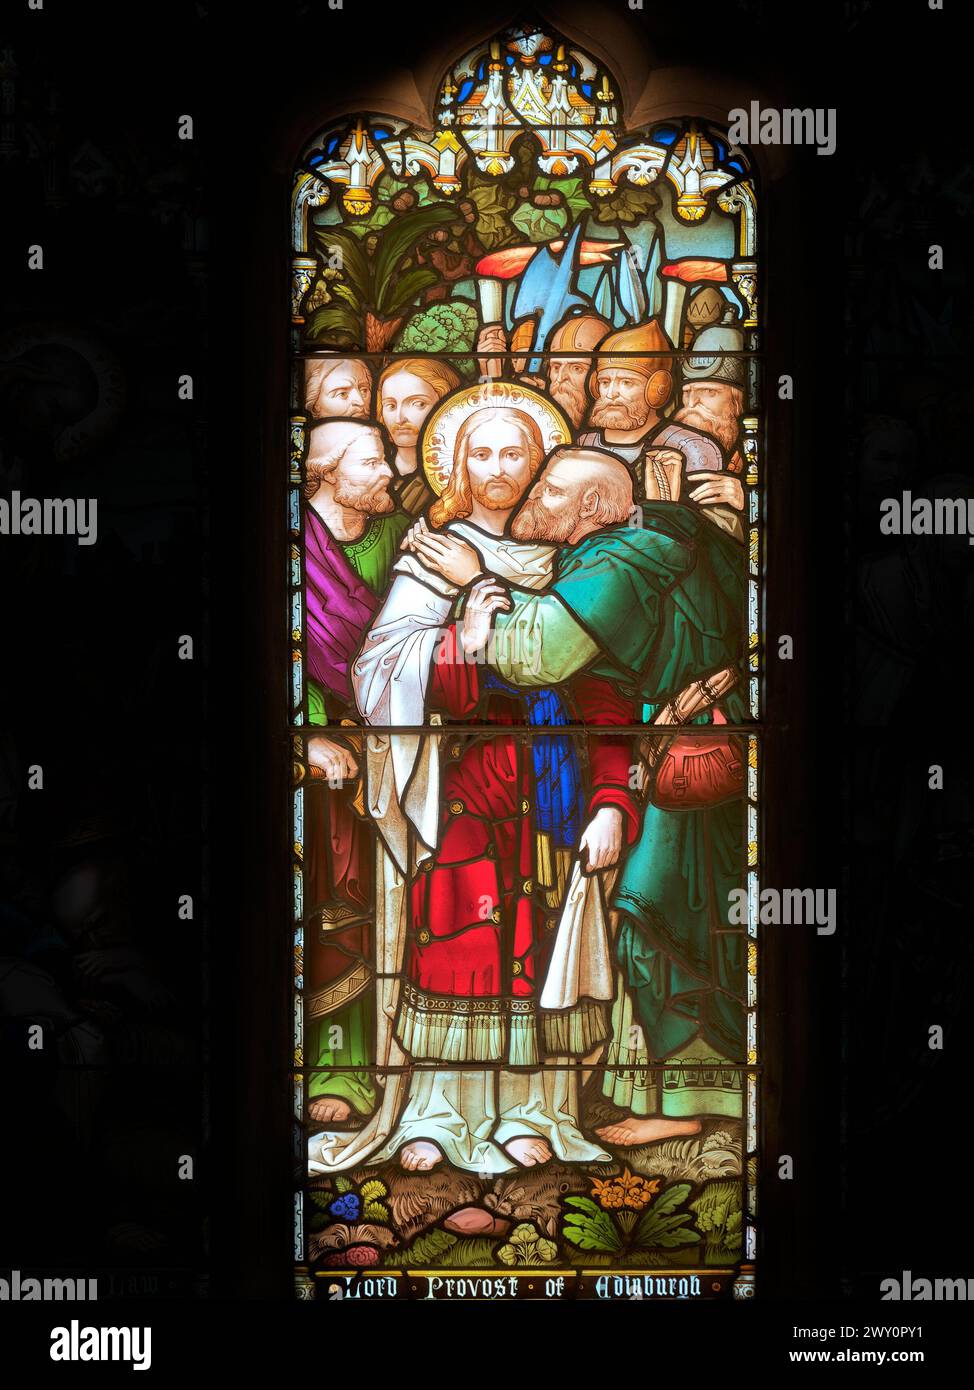 Jésus-Christ, dans le jardin de Gethsémani, est trahi par son disciple Judas avec un baiser, signe aux soldats des chefs juifs de l'attraper. Banque D'Images